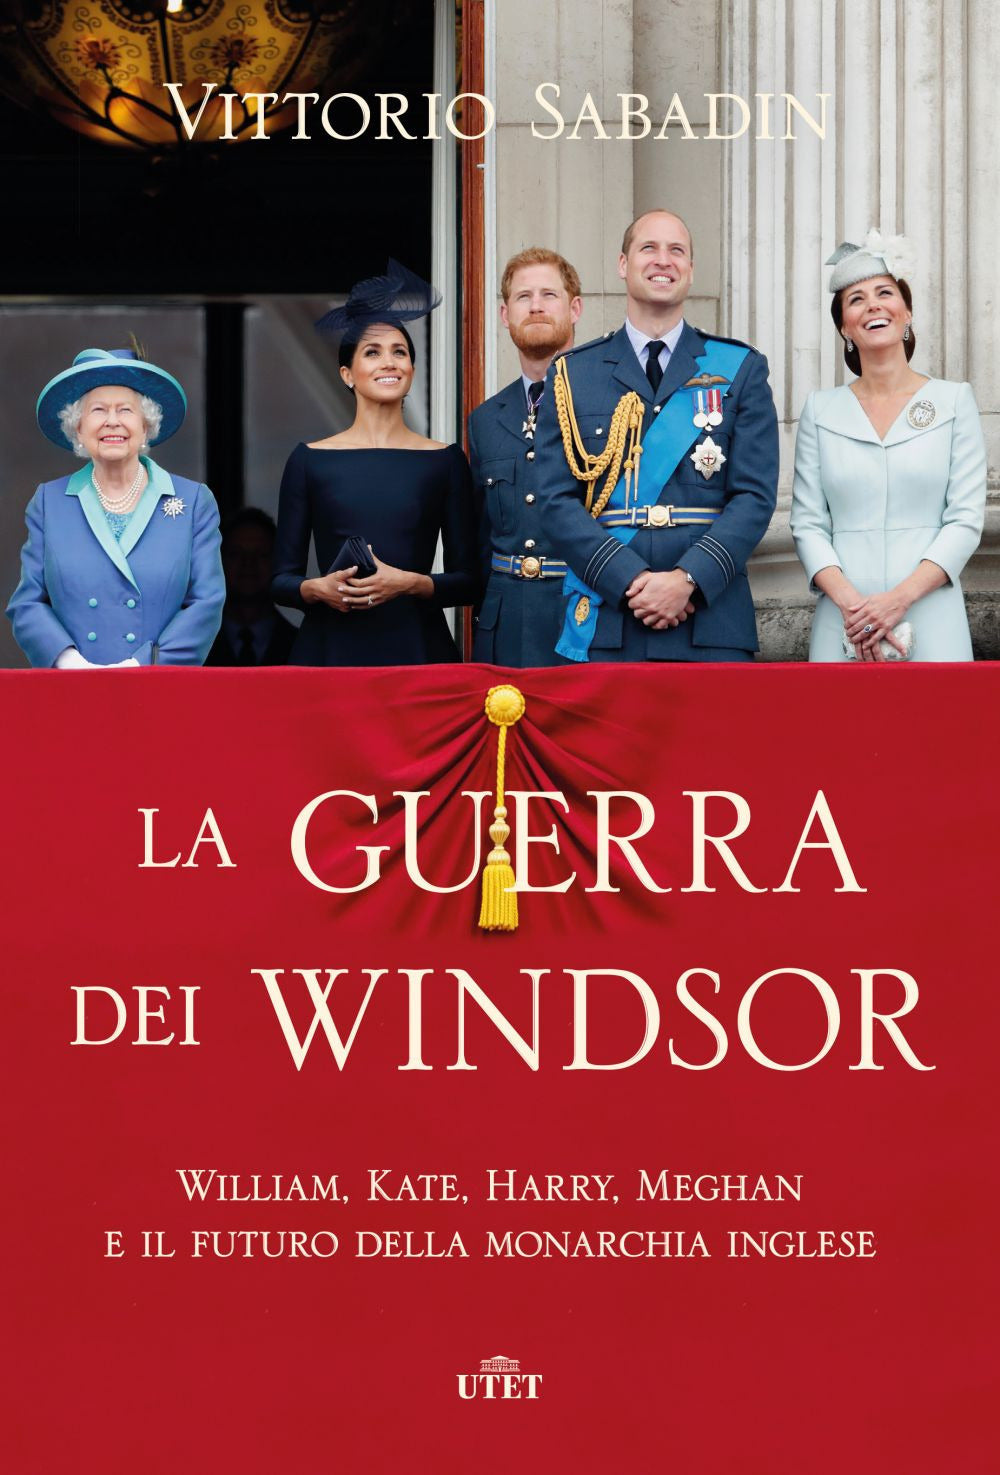 La guerra dei Windsor. William, Kate, Harry, Meghan e il futuro della monarchia inglese.